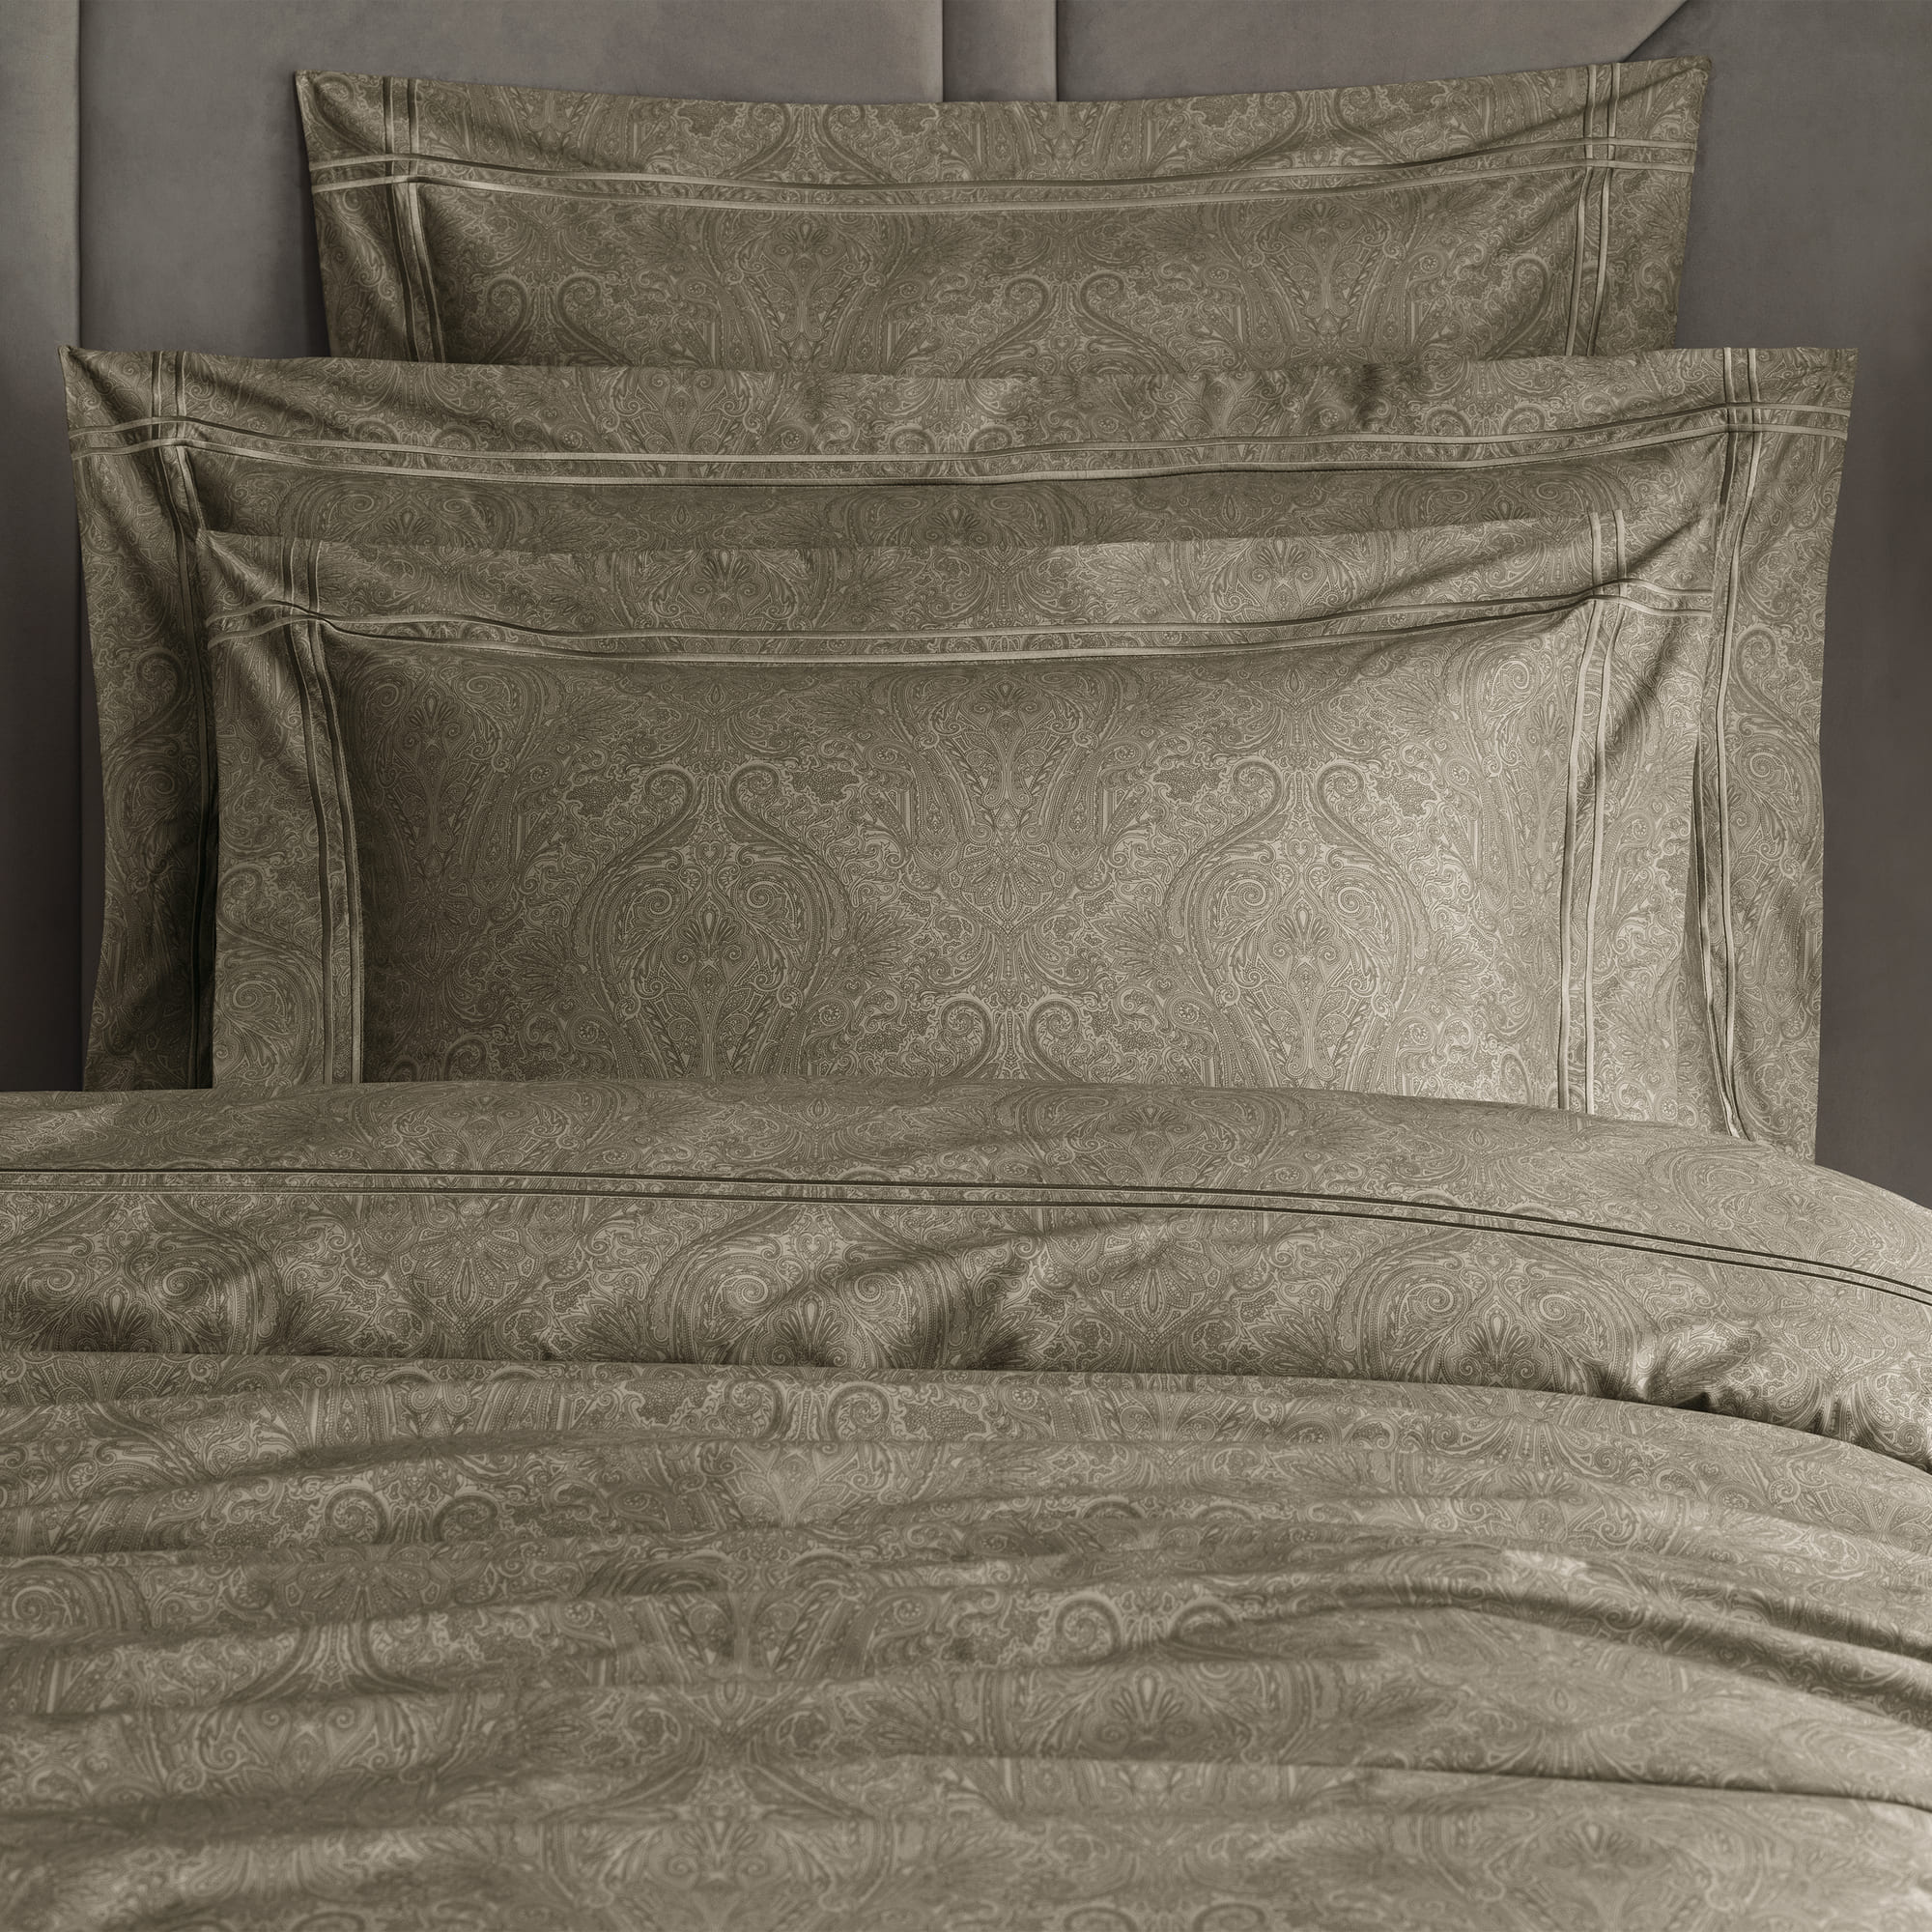 Комплект постельного белья Togas Лавинье коричневый Двуспальный кинг сайз, размер Кинг сайз - фото 5